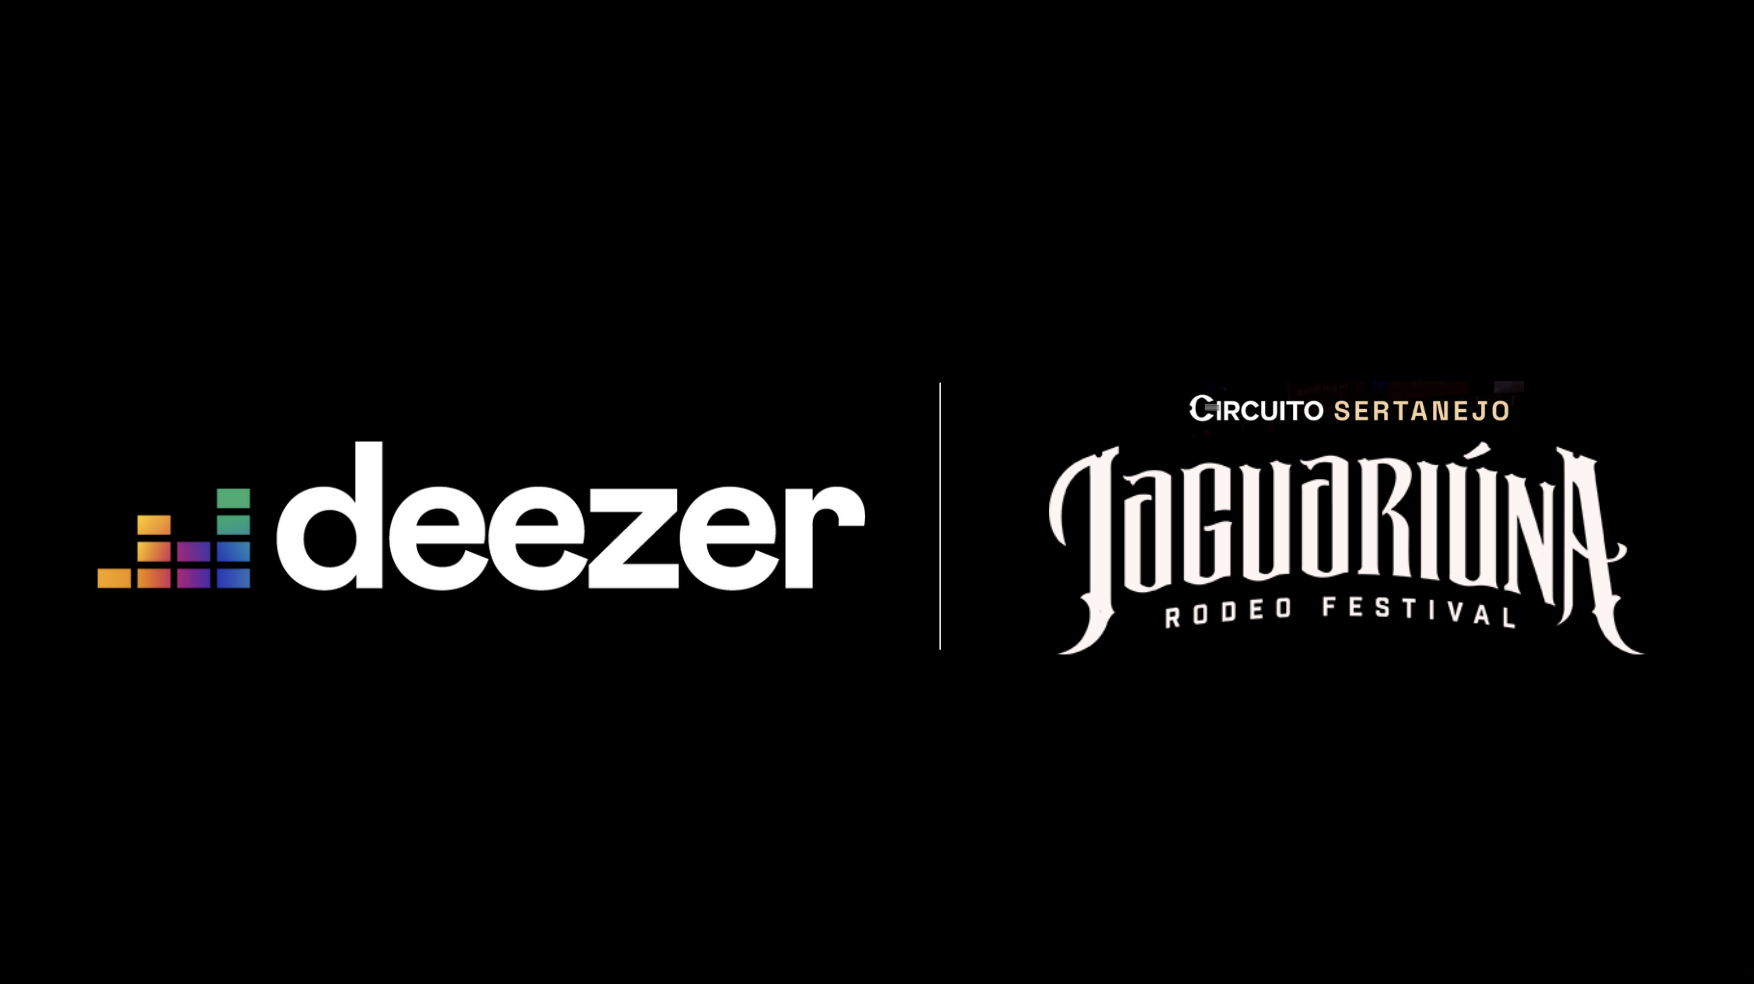 Jaguariúna Rodeo Festival 2023: Deezer marca presença em mais um evento do  Circuito Sertanejo - Deezer Newsroom